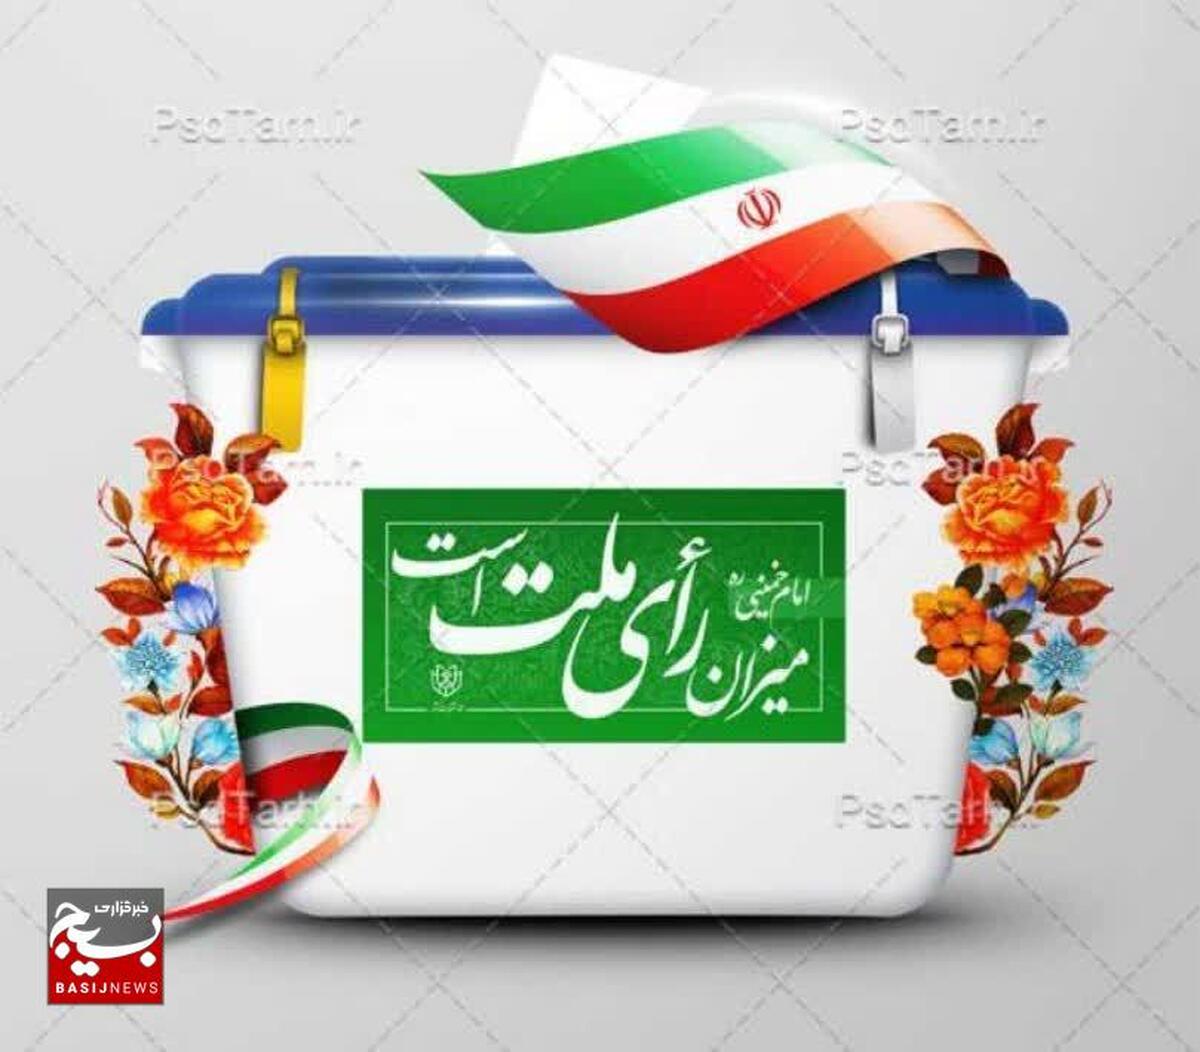 هزار و ۸۹ شعبه در استان قزوین آماده اخذ رأی می باشند